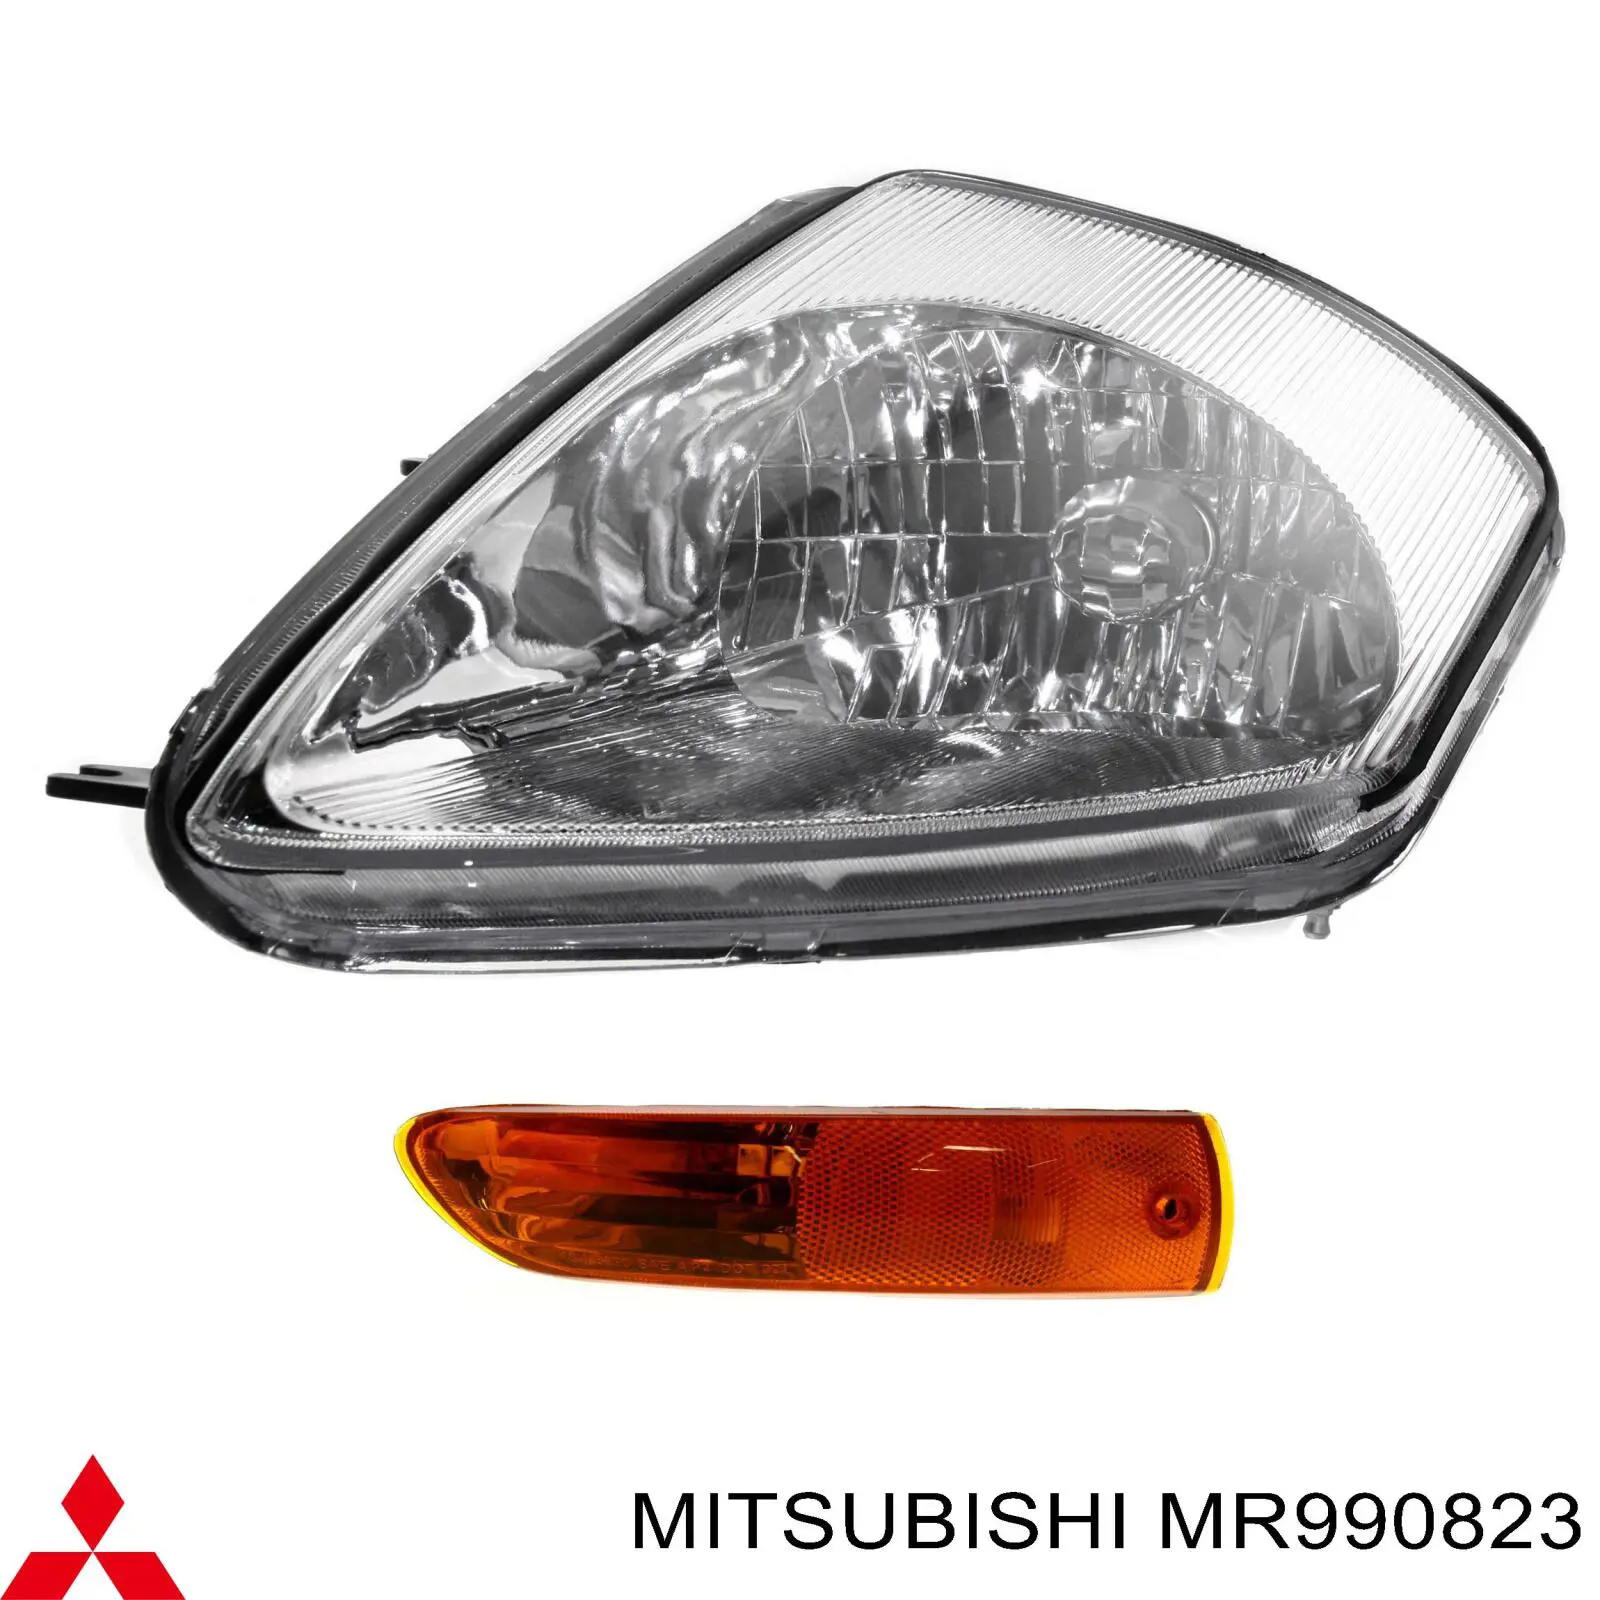 Указатель поворота левый Mitsubishi MR990823